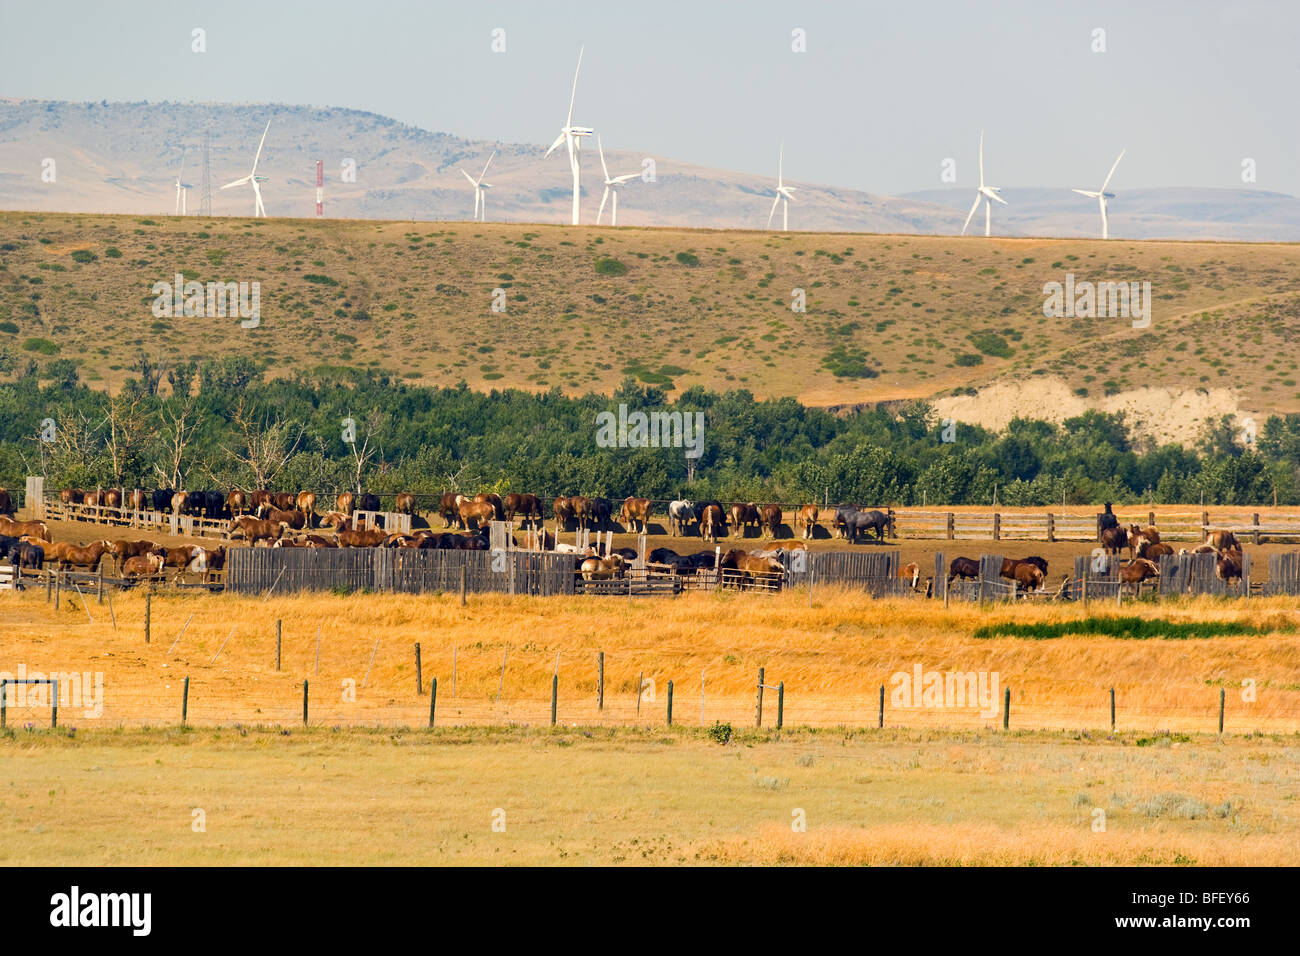 Arbeiten Pferde und Wiind Turbinen, Pincher Creek, Alberta, Kanada, Energie, Windenergie, Alternative Energie Stockfoto